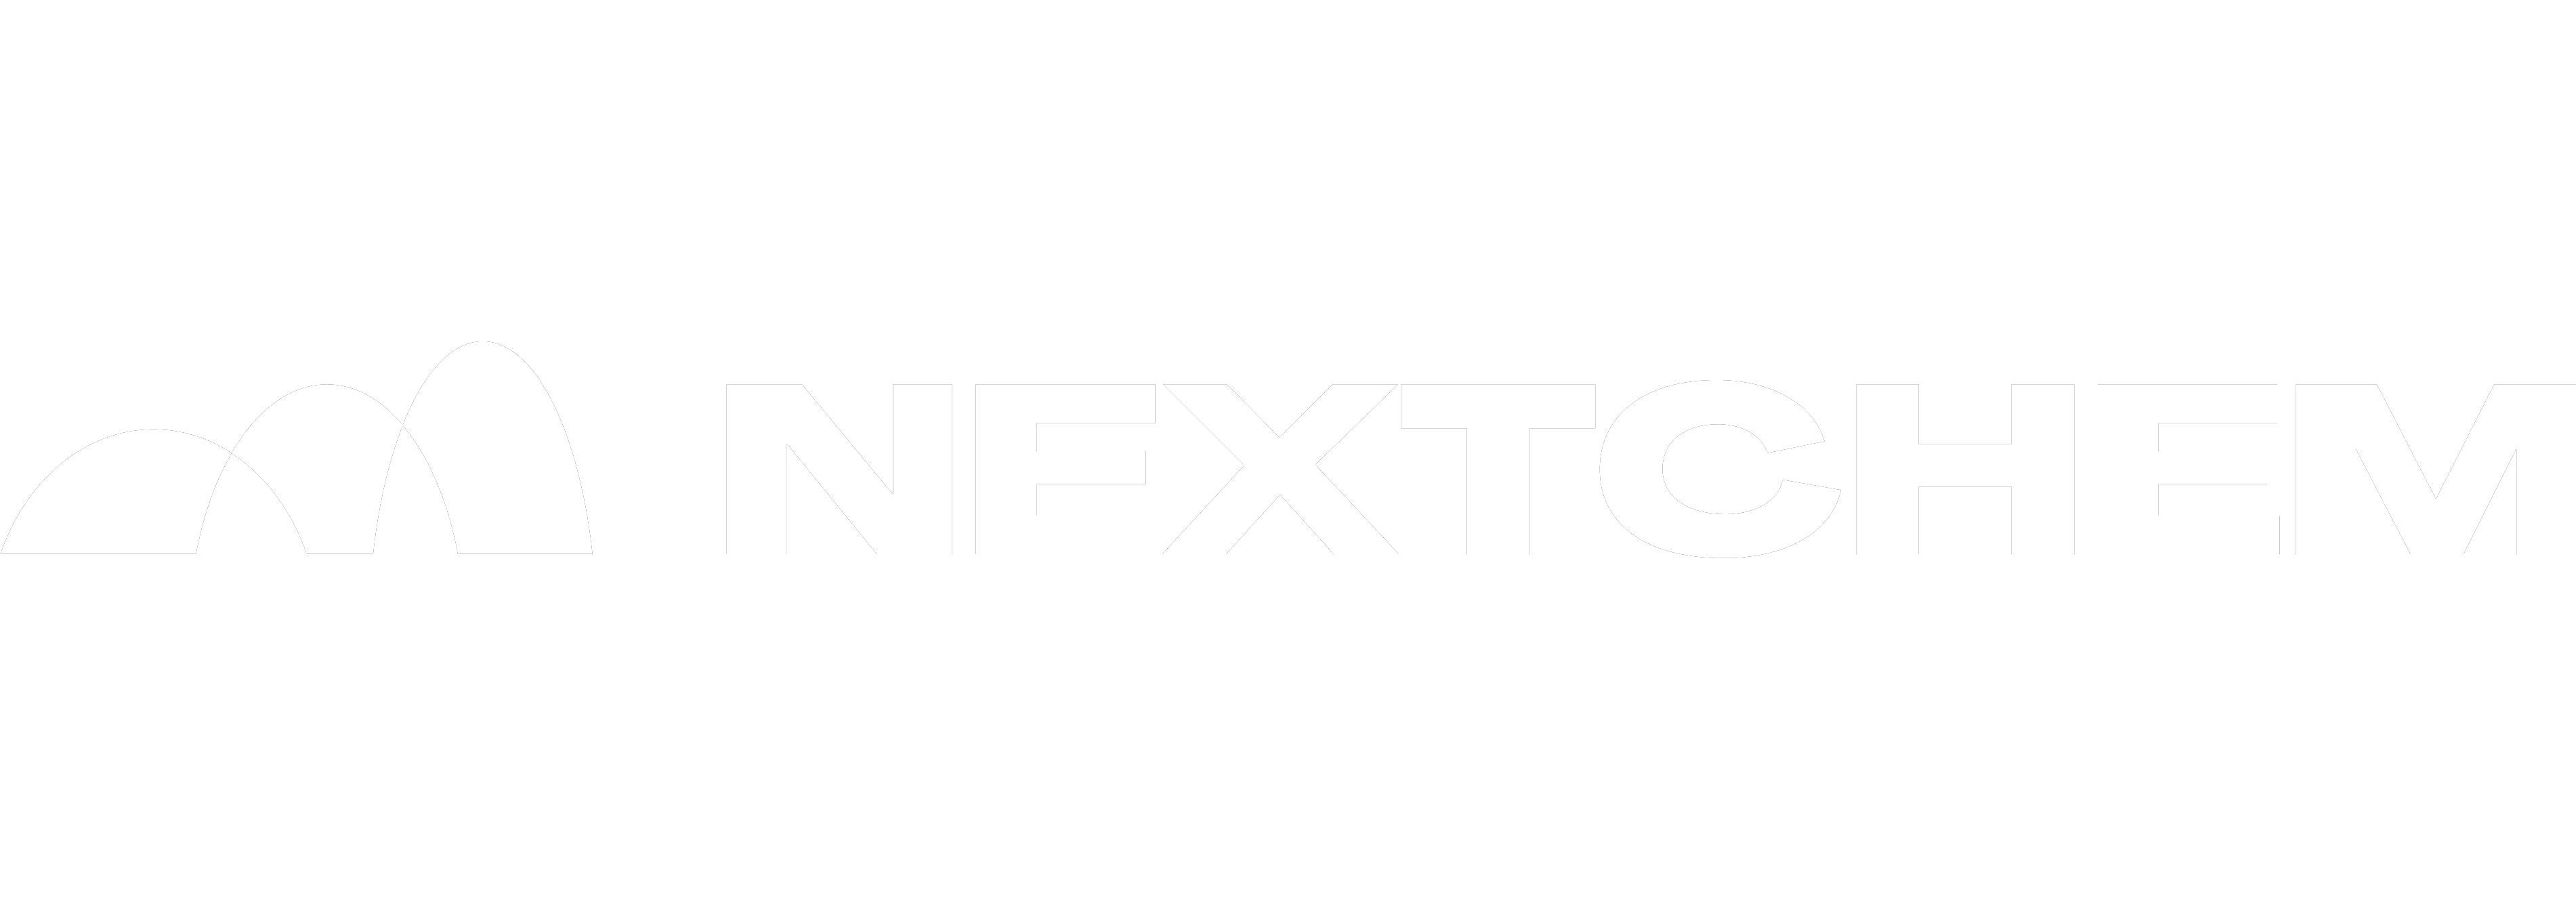 Nextchem logo